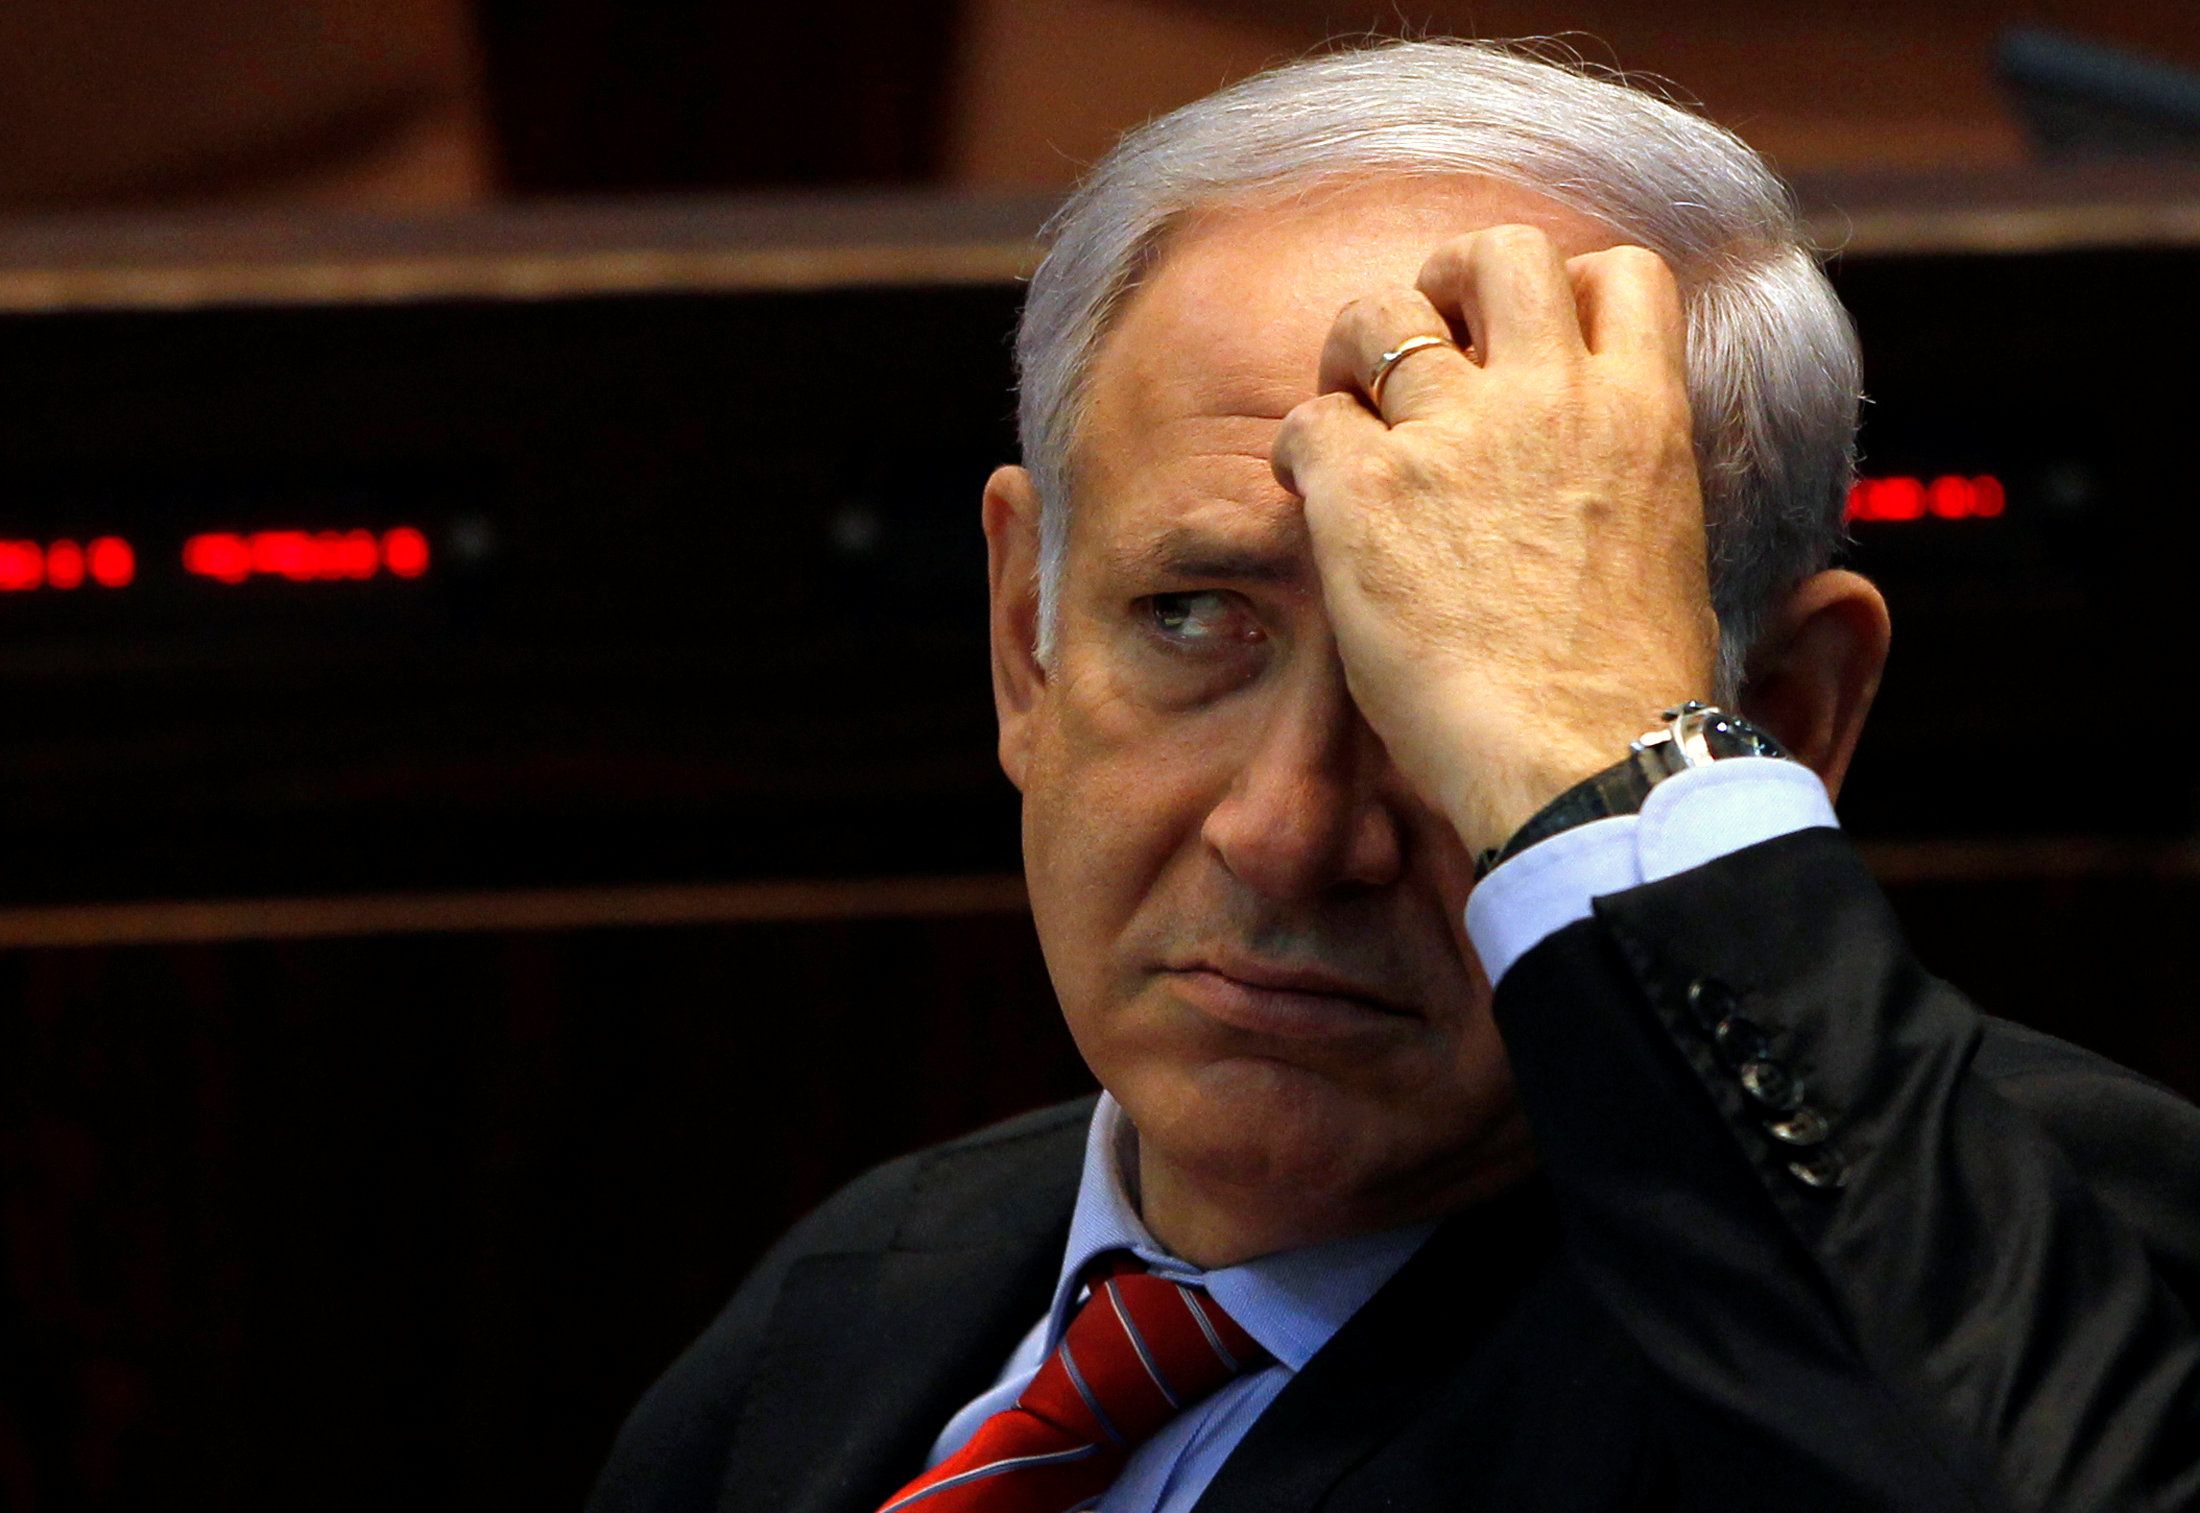 Netanyahu somete a prueba la reelección de su mandato en las próximas elecciones generales que se celebrarán en Israel el 9 de abril.